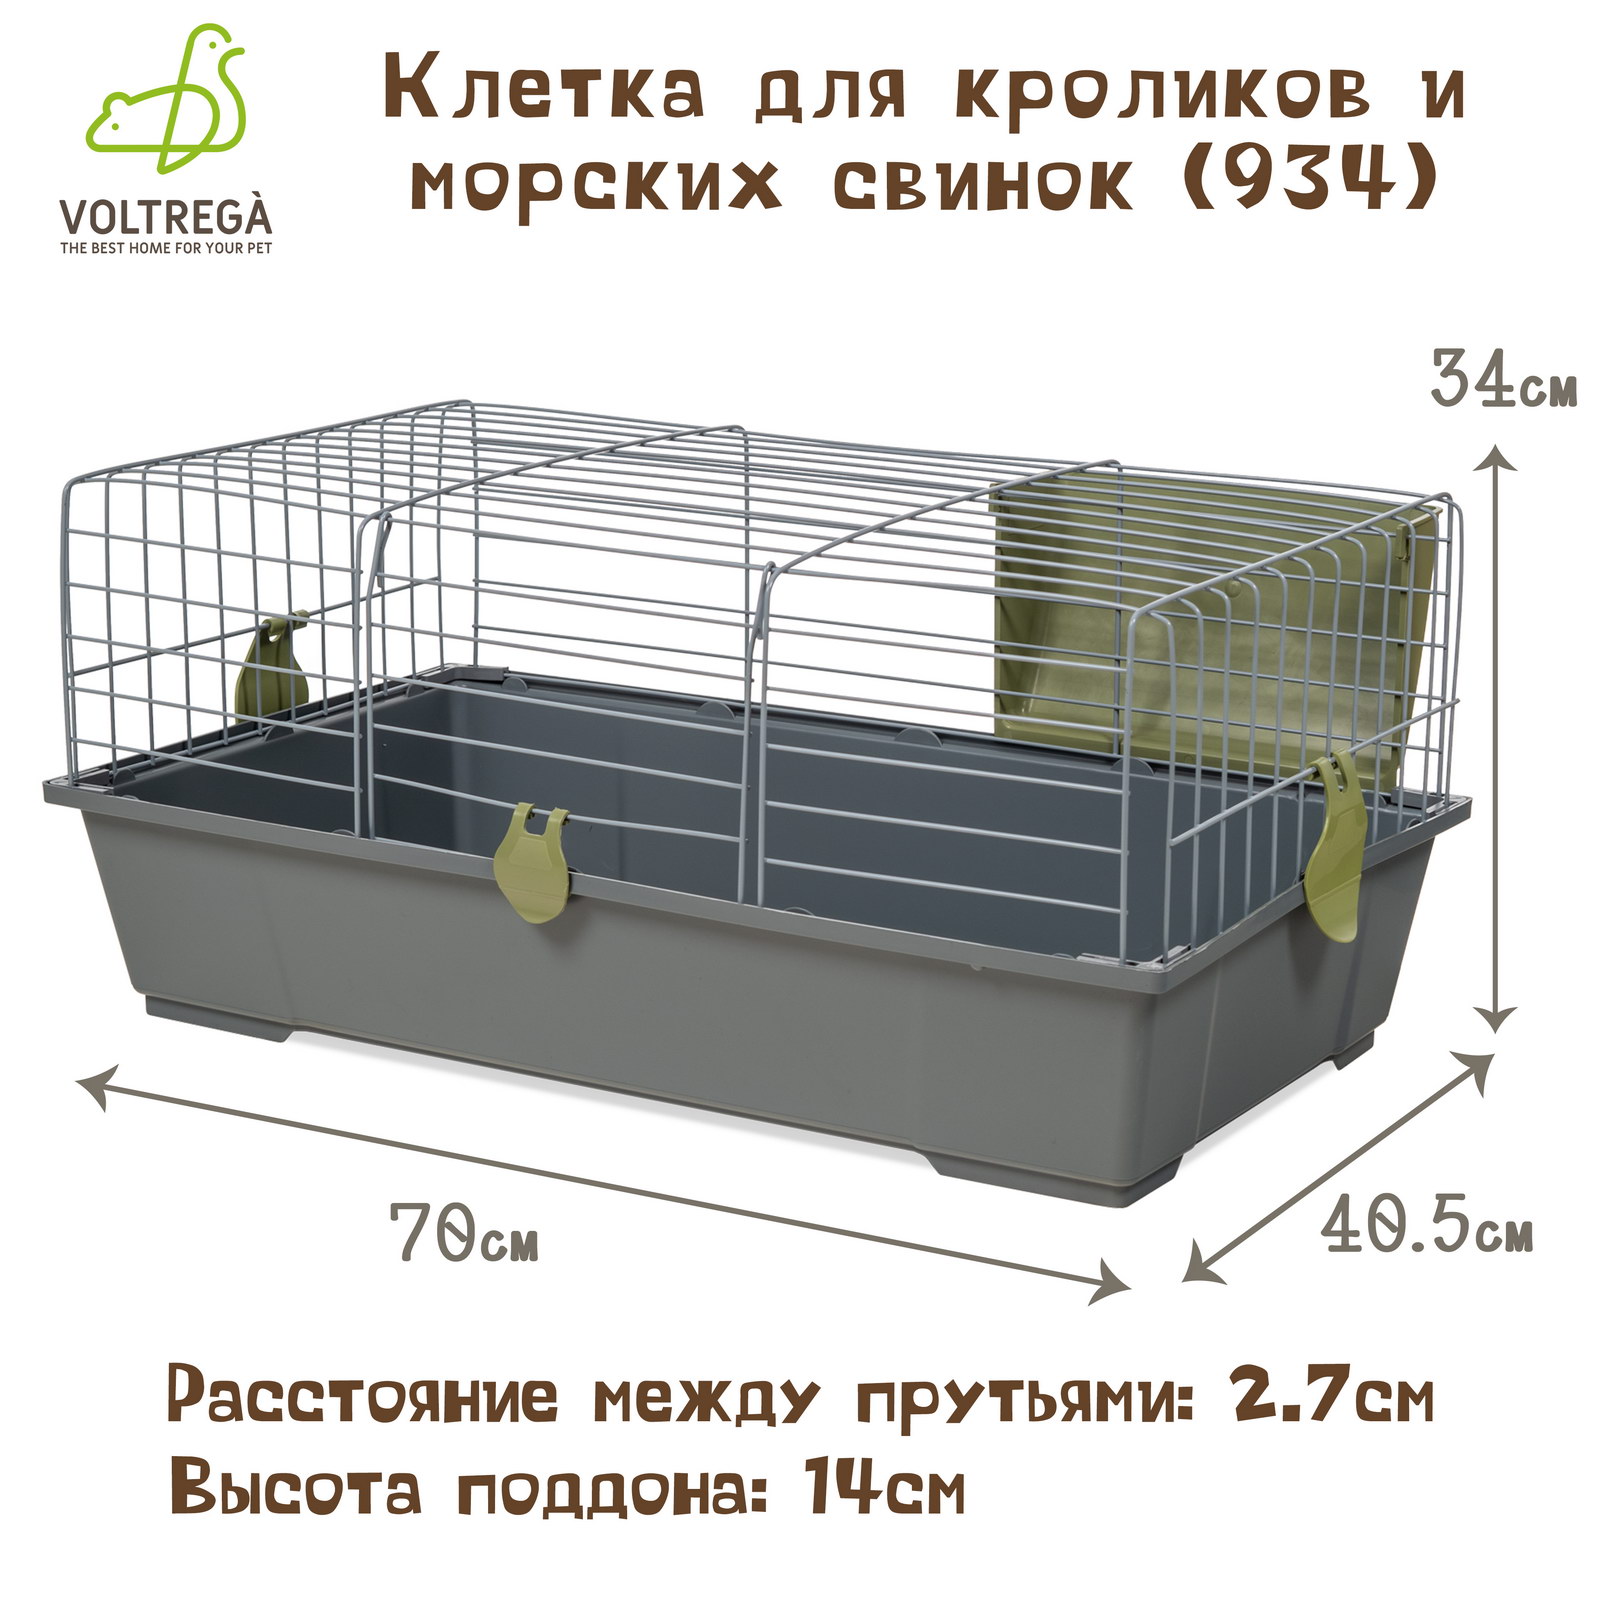 Клетка для кроликов и морских свинок VOLTREGA 934, серо-оливковый, 70 x 40.5 x 34 см